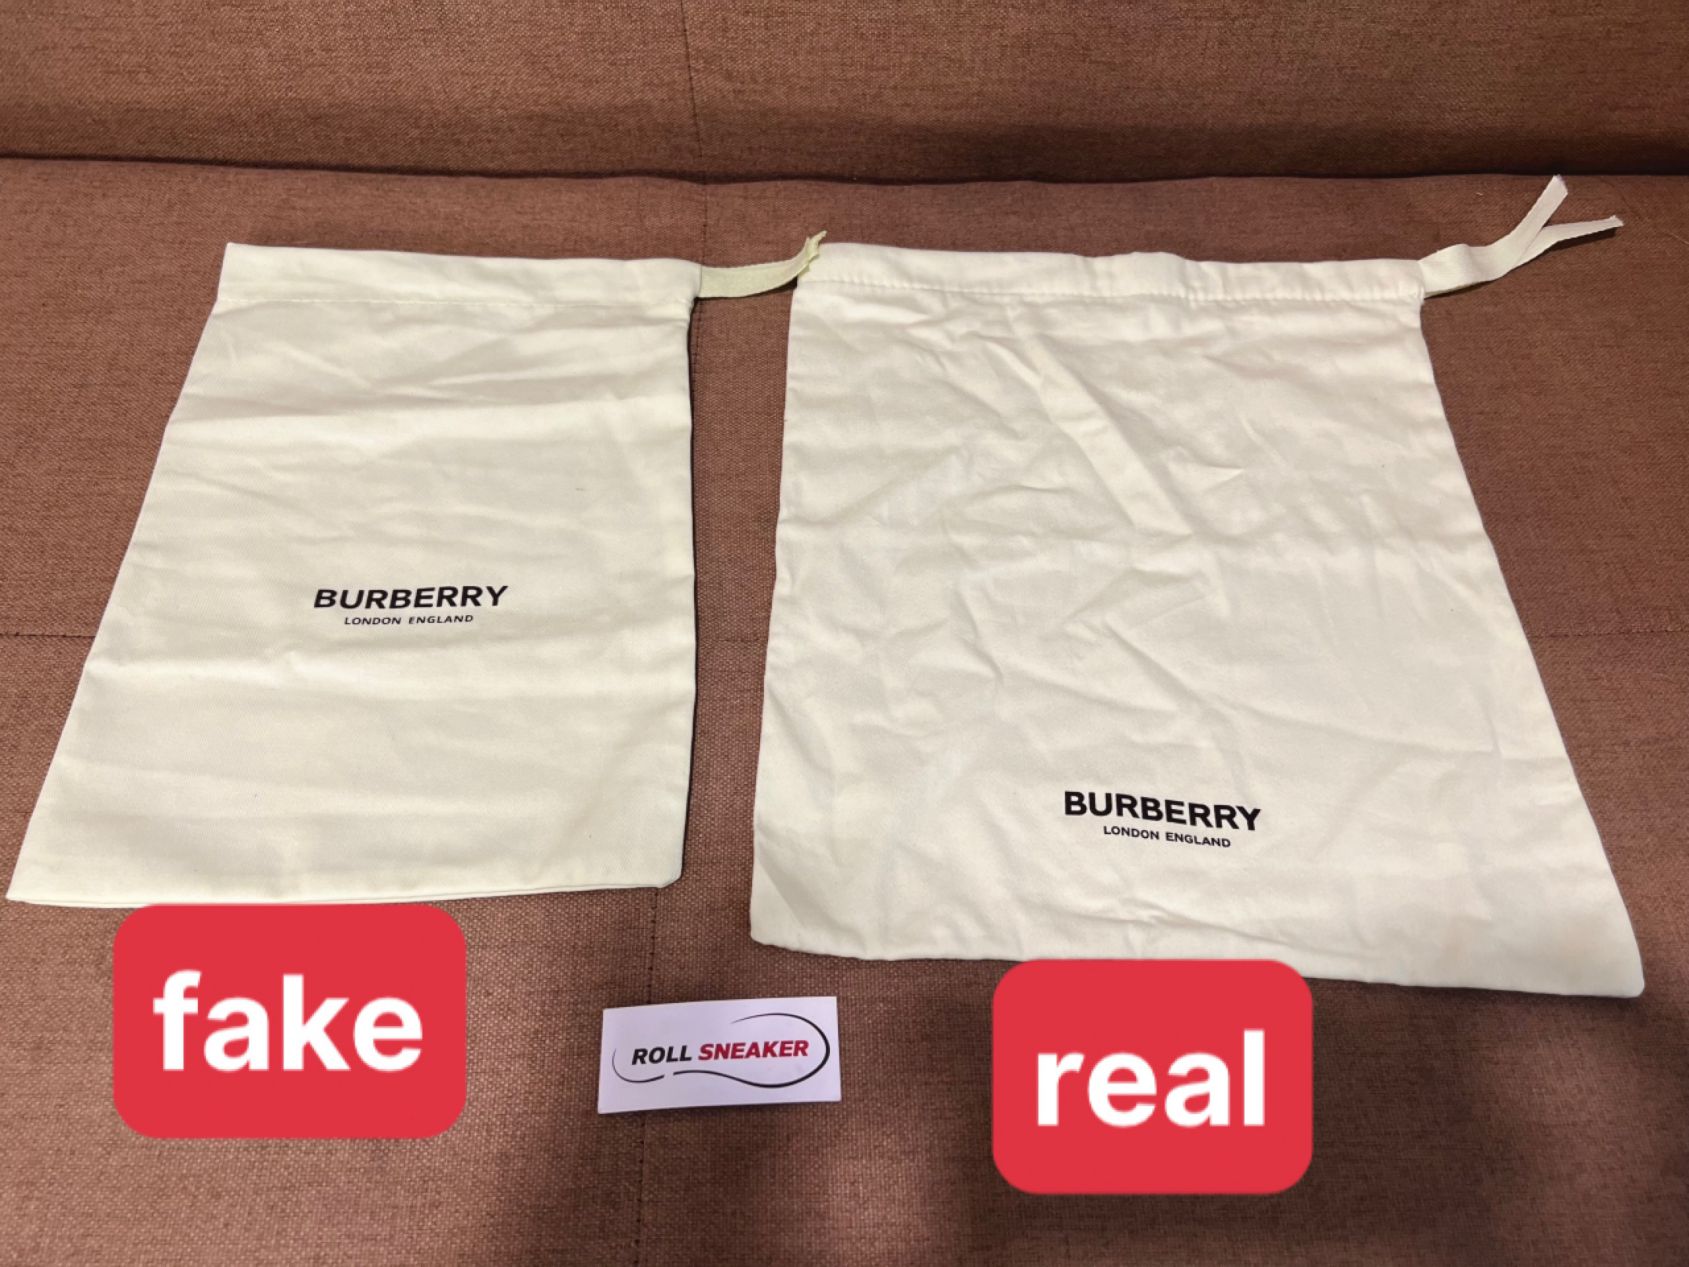 Kích thước túi (bag) Burberry là một cách đơn giản để nhận biết